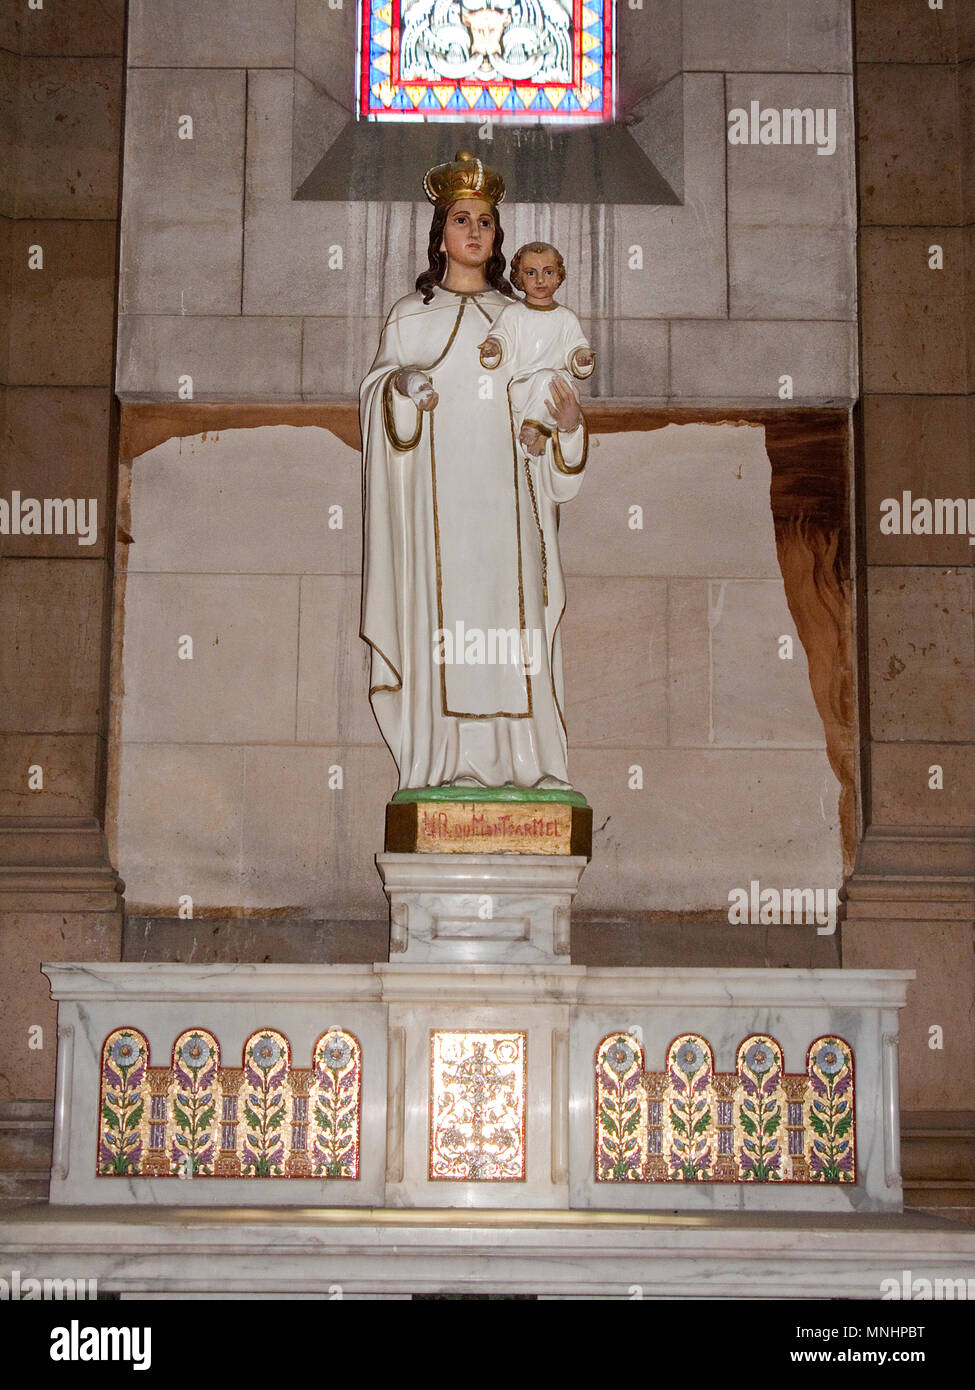 Die selige Jungfrau Maria mit dem Jesuskind im Inneren der Kathedrale Sainte-Marie-Majeure de Marseille, Bouches-du-Rhône der Region Provence-Alpes-Côte d'Azur, Frankreich Stockfoto